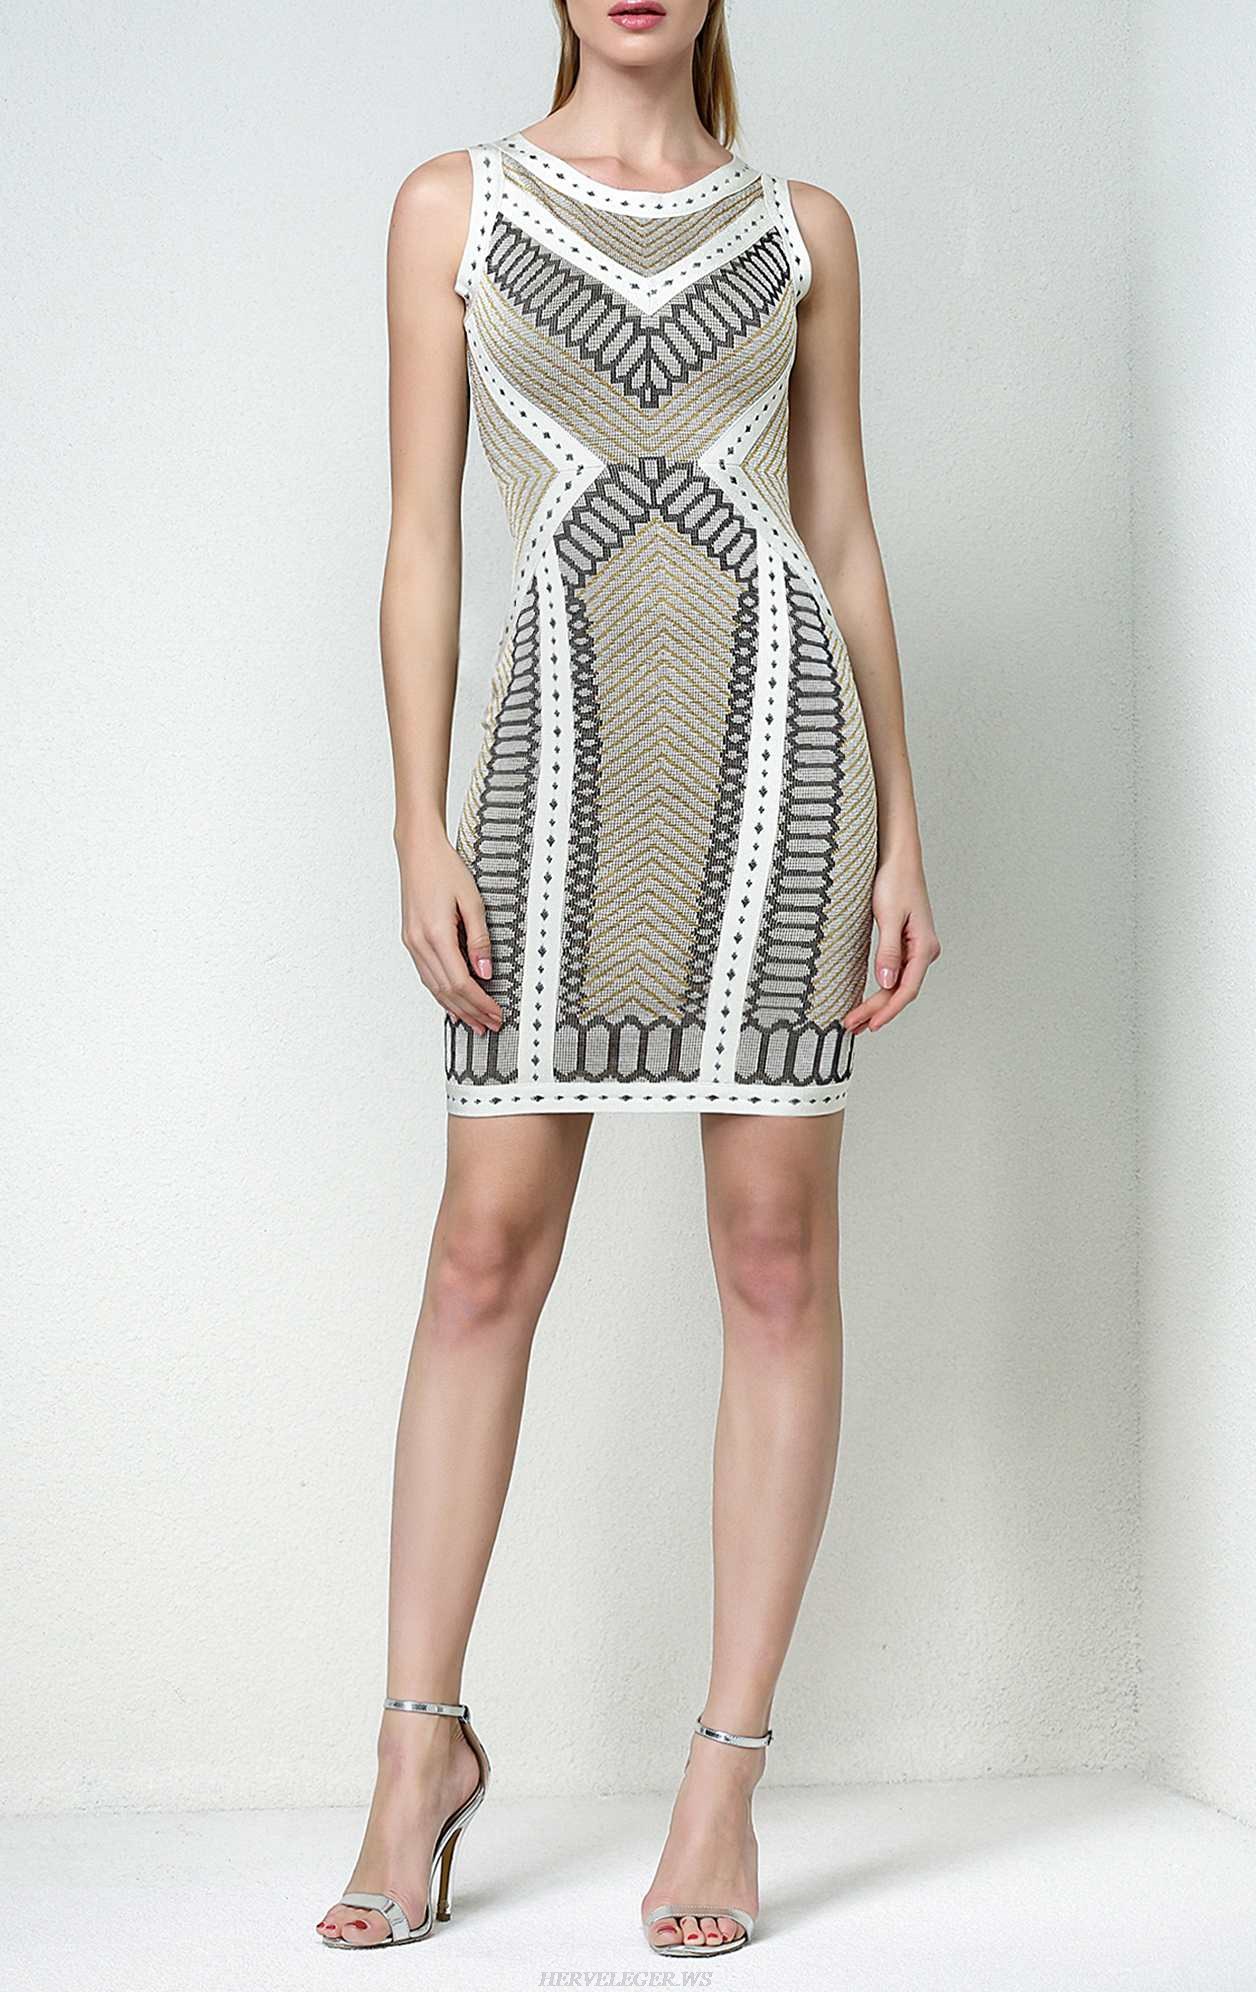 Herve Leger Lylah Geometric Raised Jacquard Dress